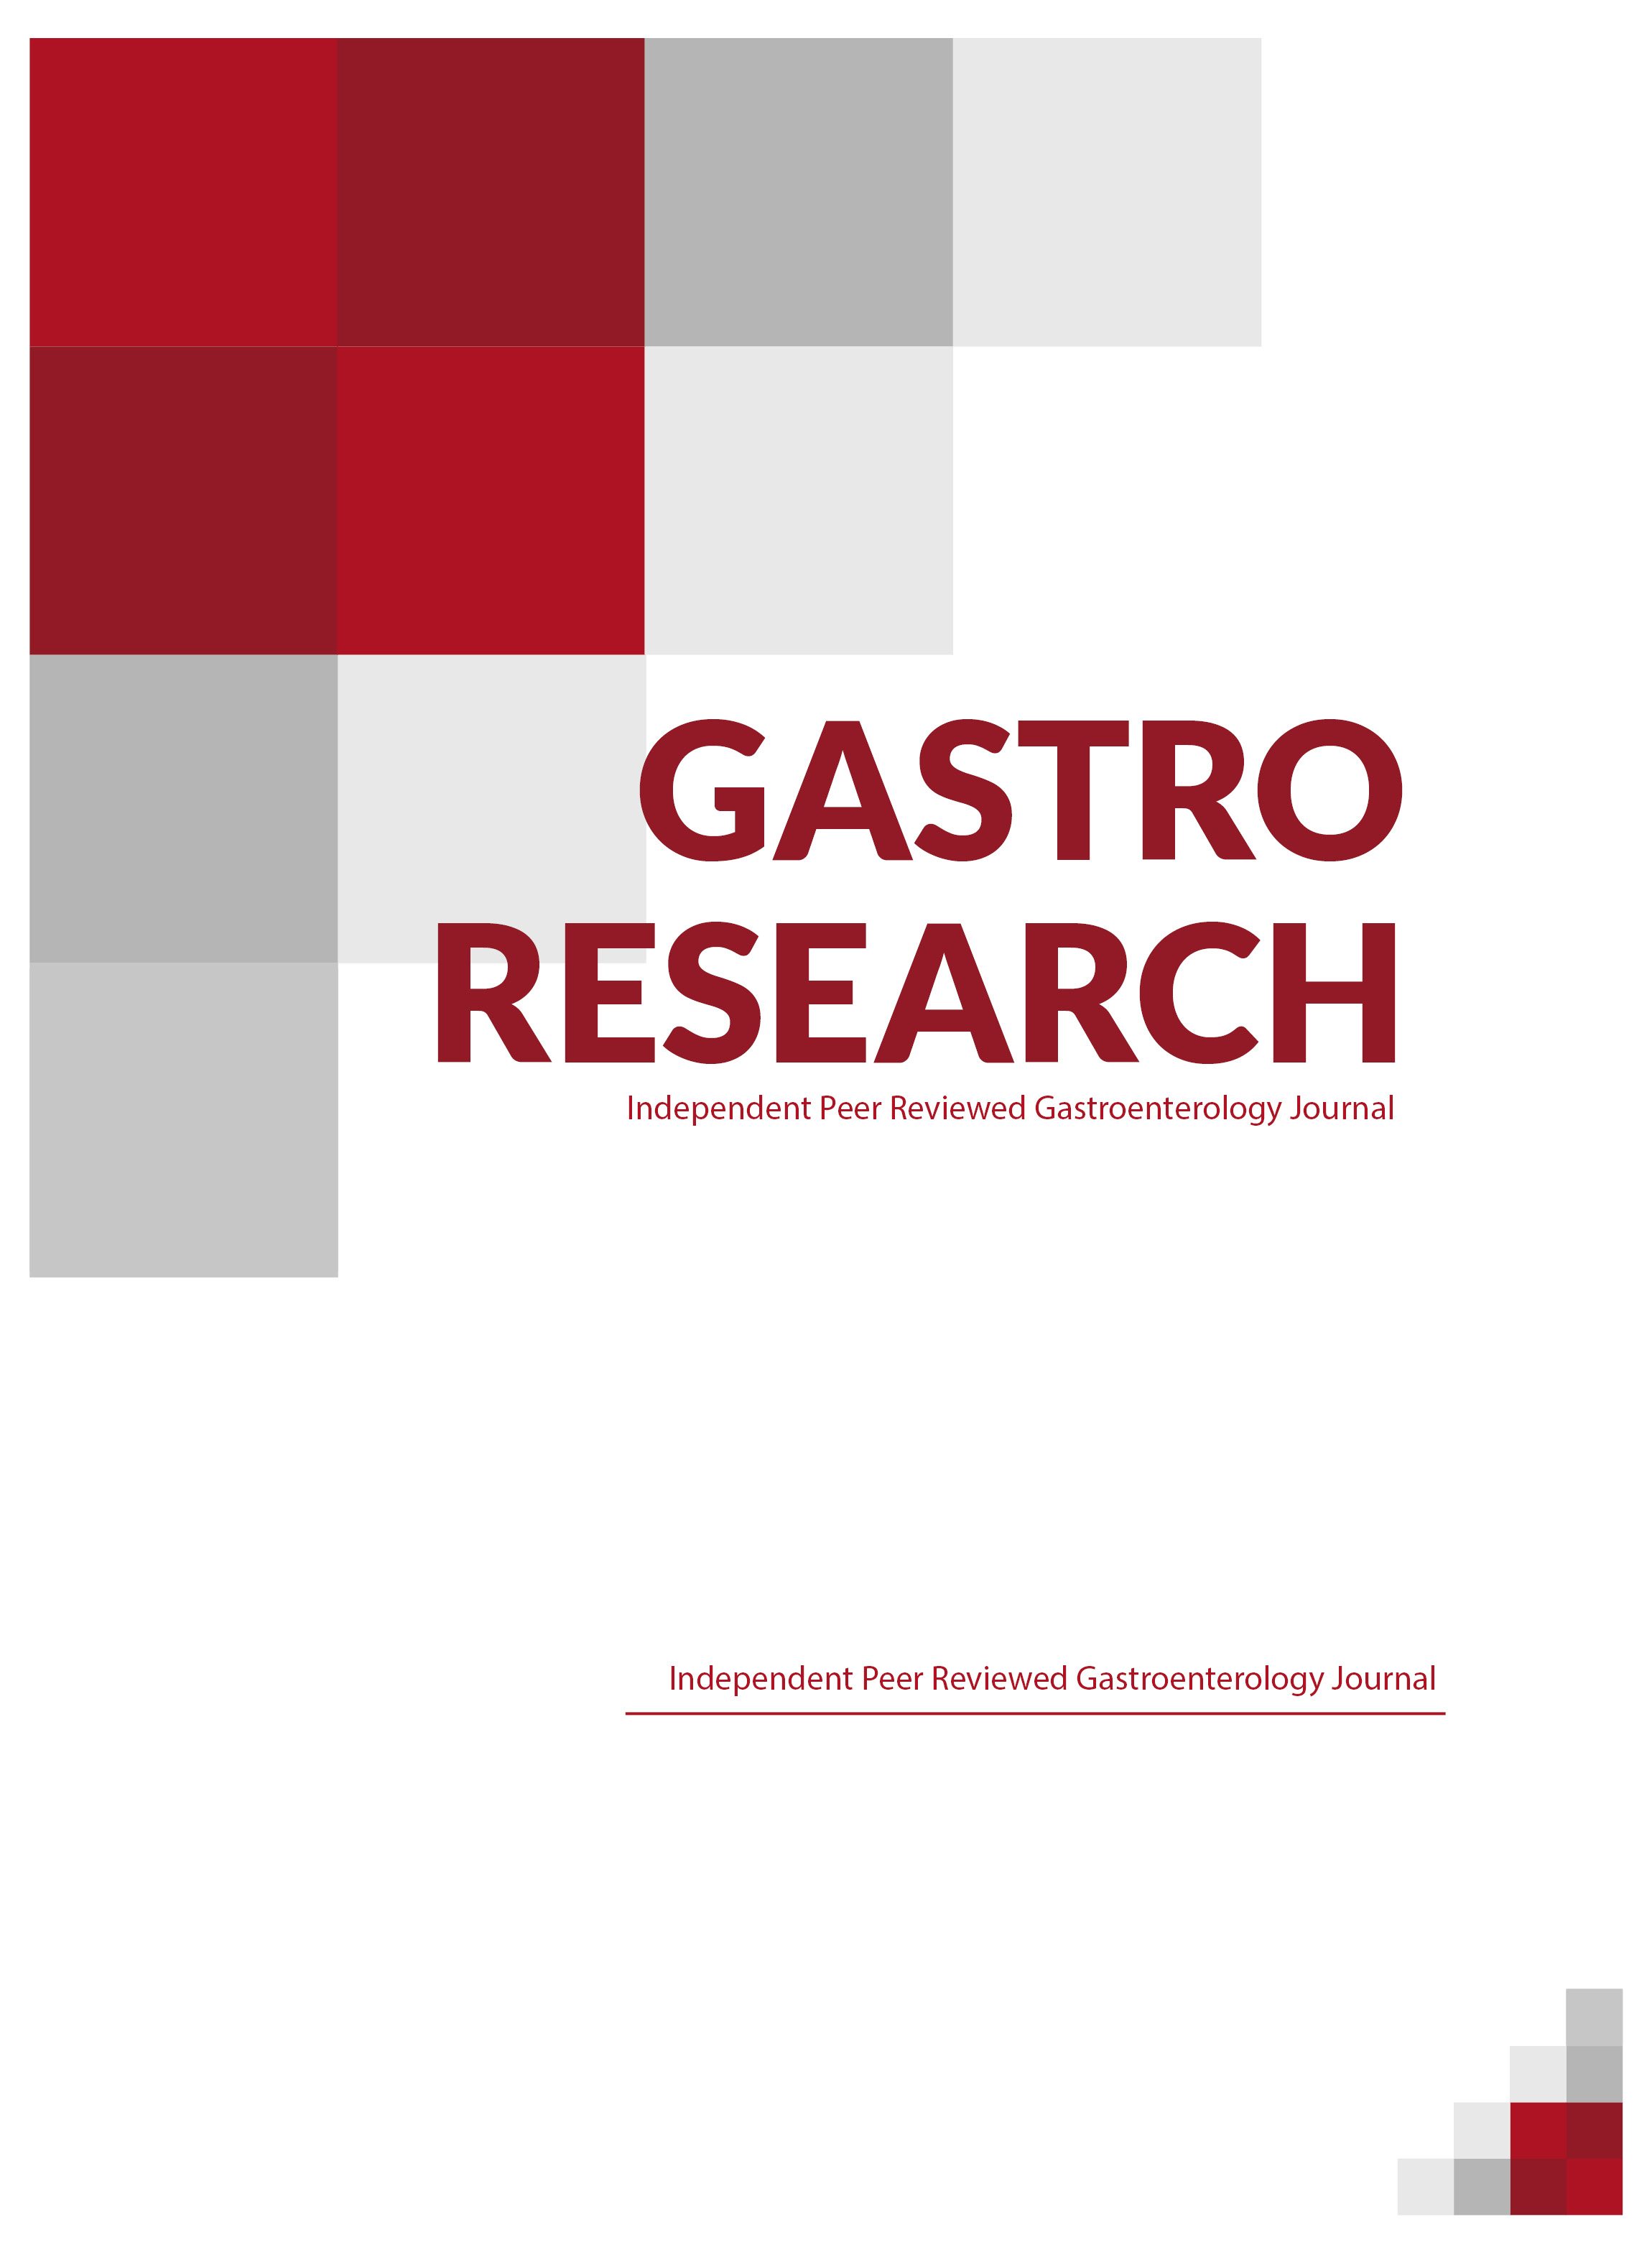 Gastro Research